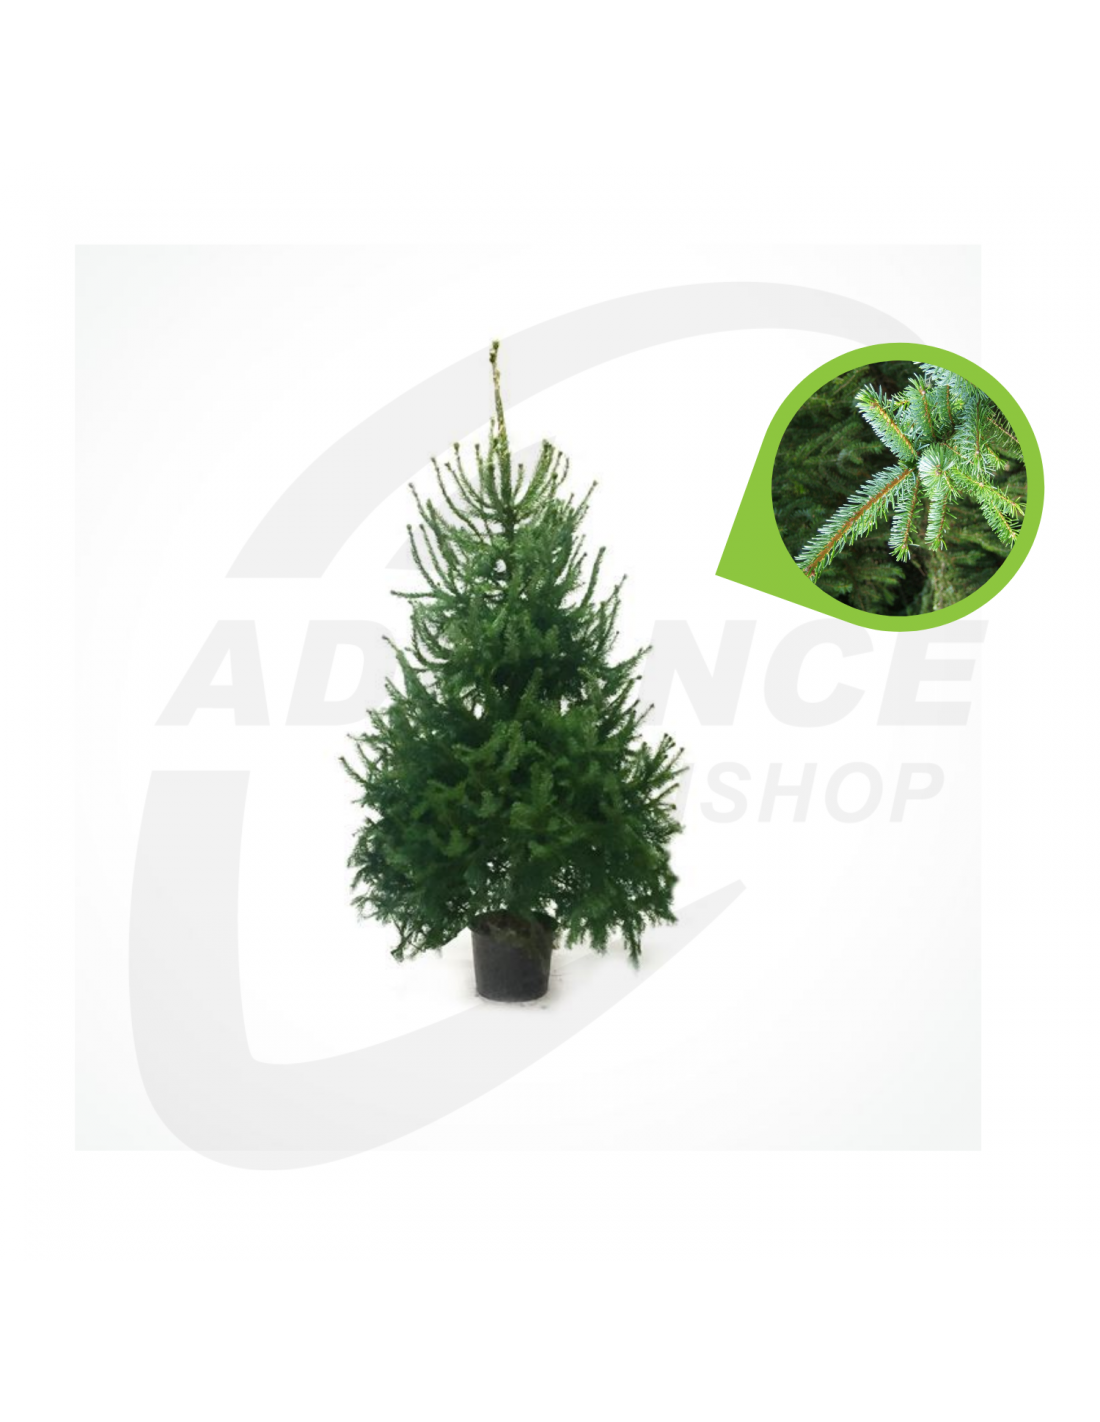 Kerstboom kopen? Picea omorika / Servische spar / gratis